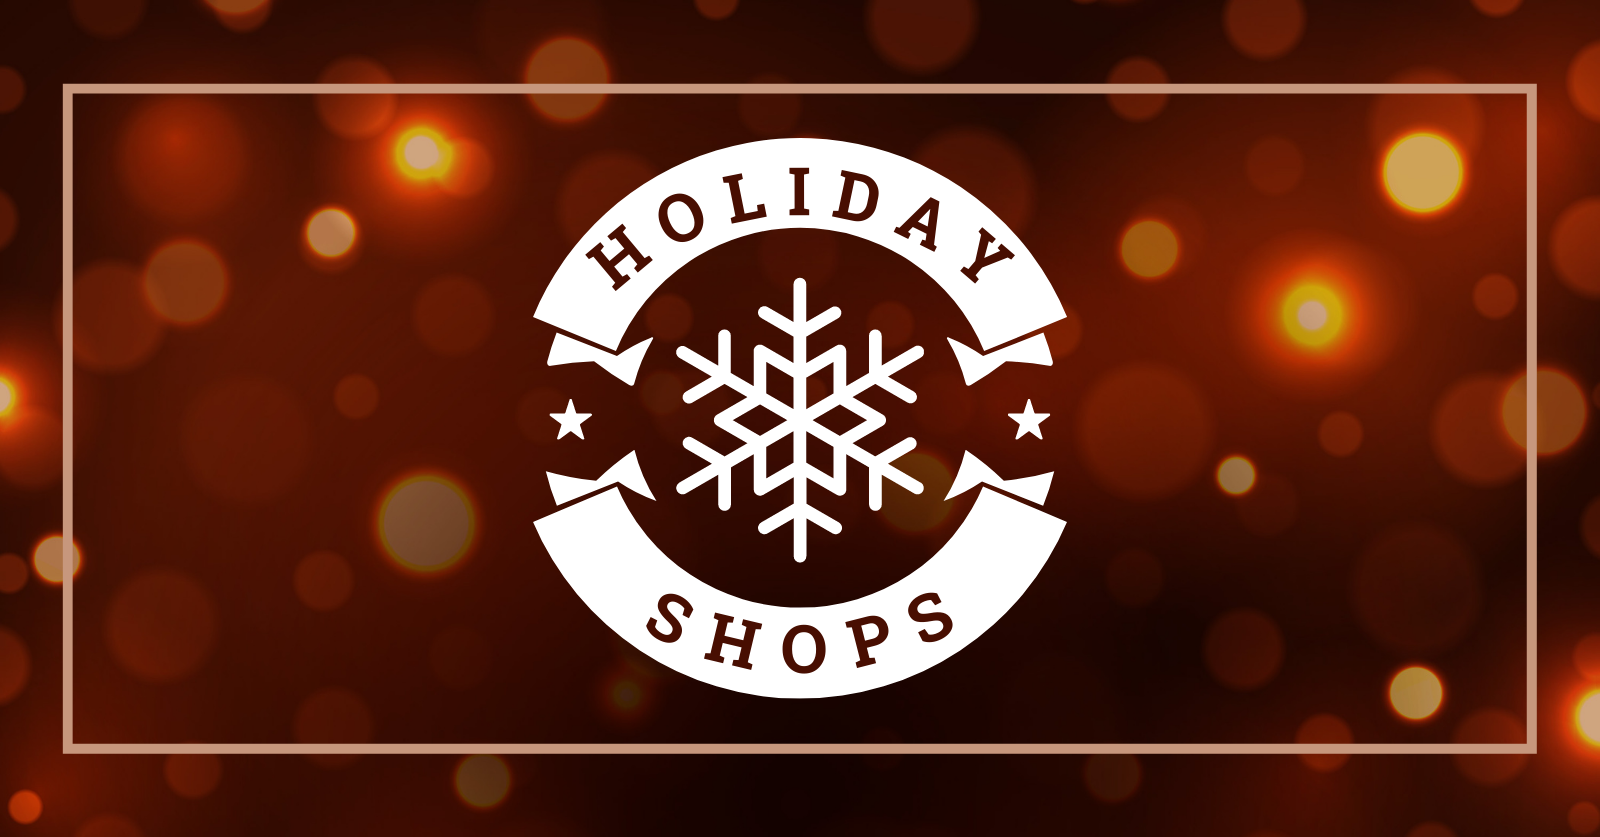 Holiday Shops Blog Post Header